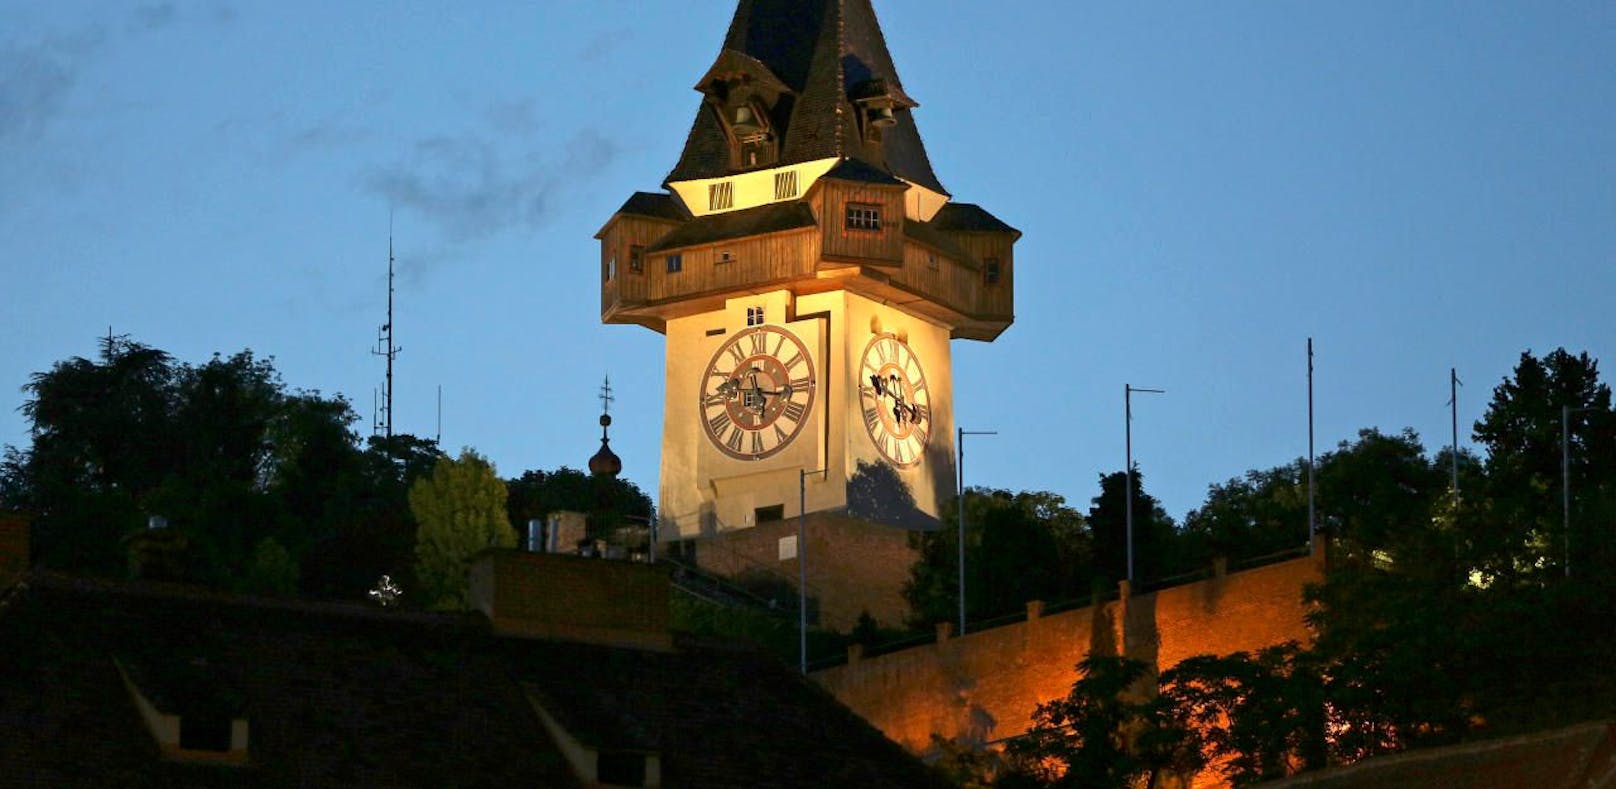 Der Uhrturm, das Wahrzeichen von Graz